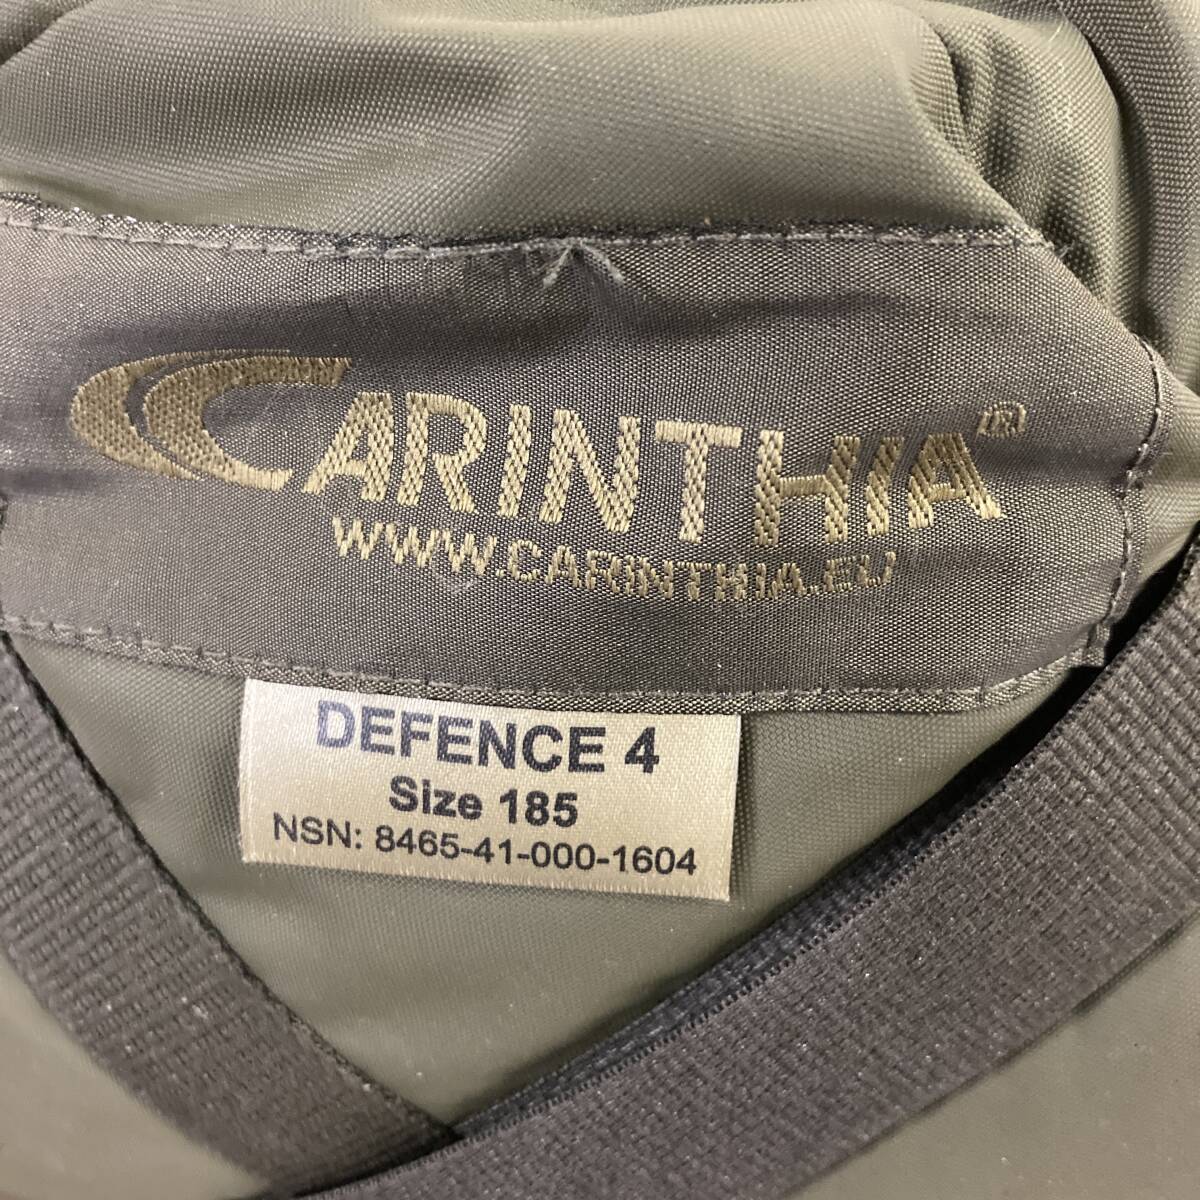  айва китайская si Adi забор 4 Defence Carinthia спальный мешок милитари спальный мешок защищающий от холода предотвращение бедствий уличный кемпинг мумия tmc02054910